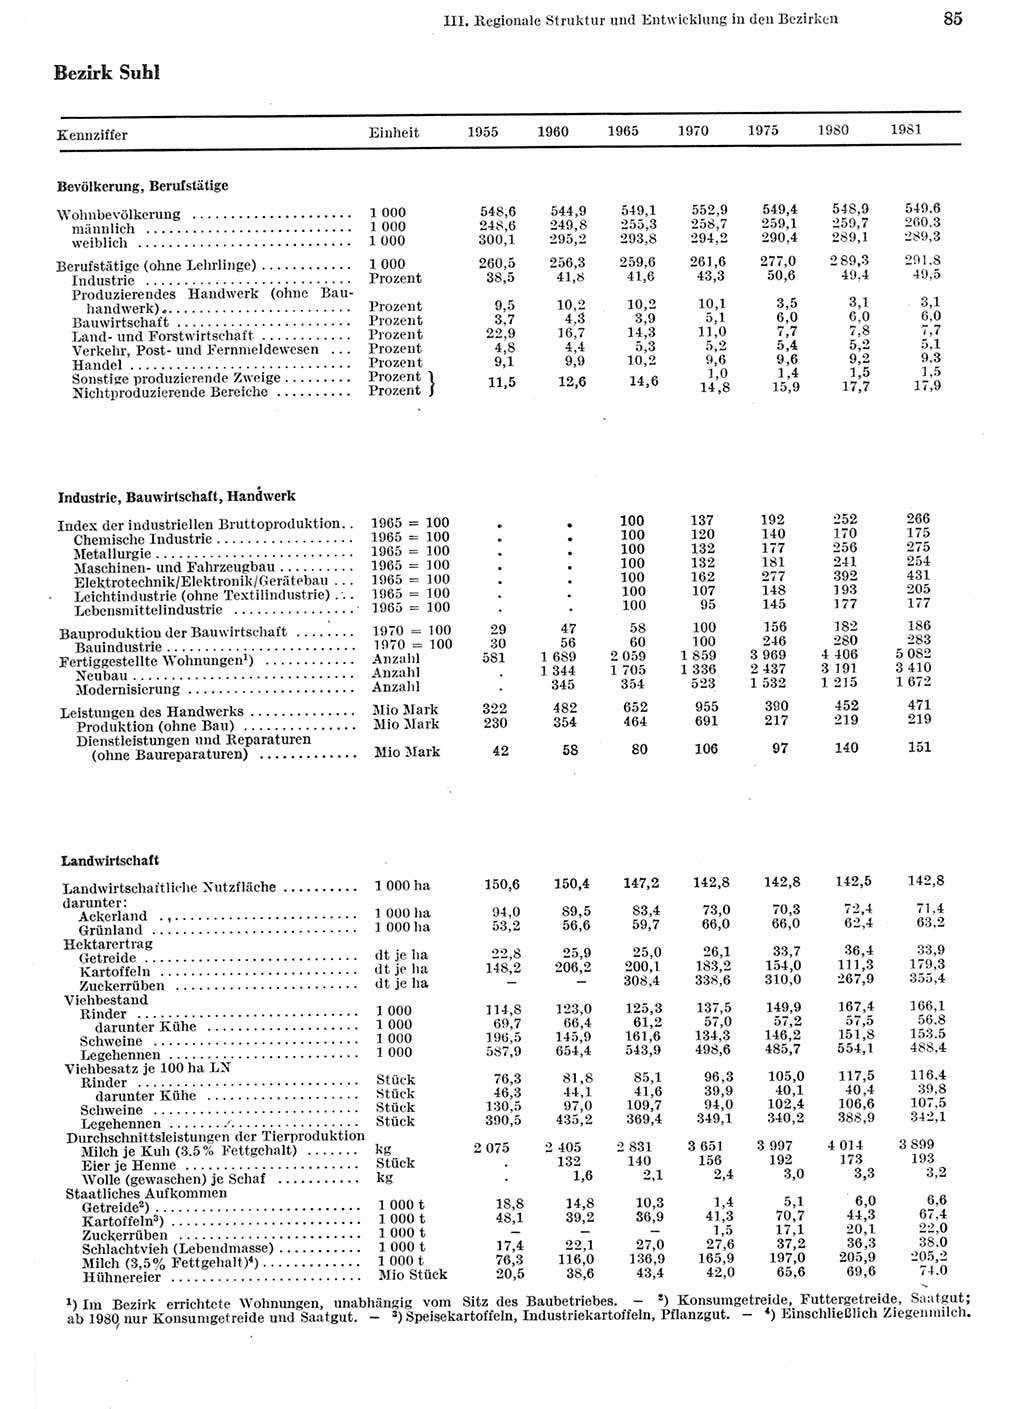 Statistisches Jahrbuch der Deutschen Demokratischen Republik (DDR) 1982, Seite 85 (Stat. Jb. DDR 1982, S. 85)